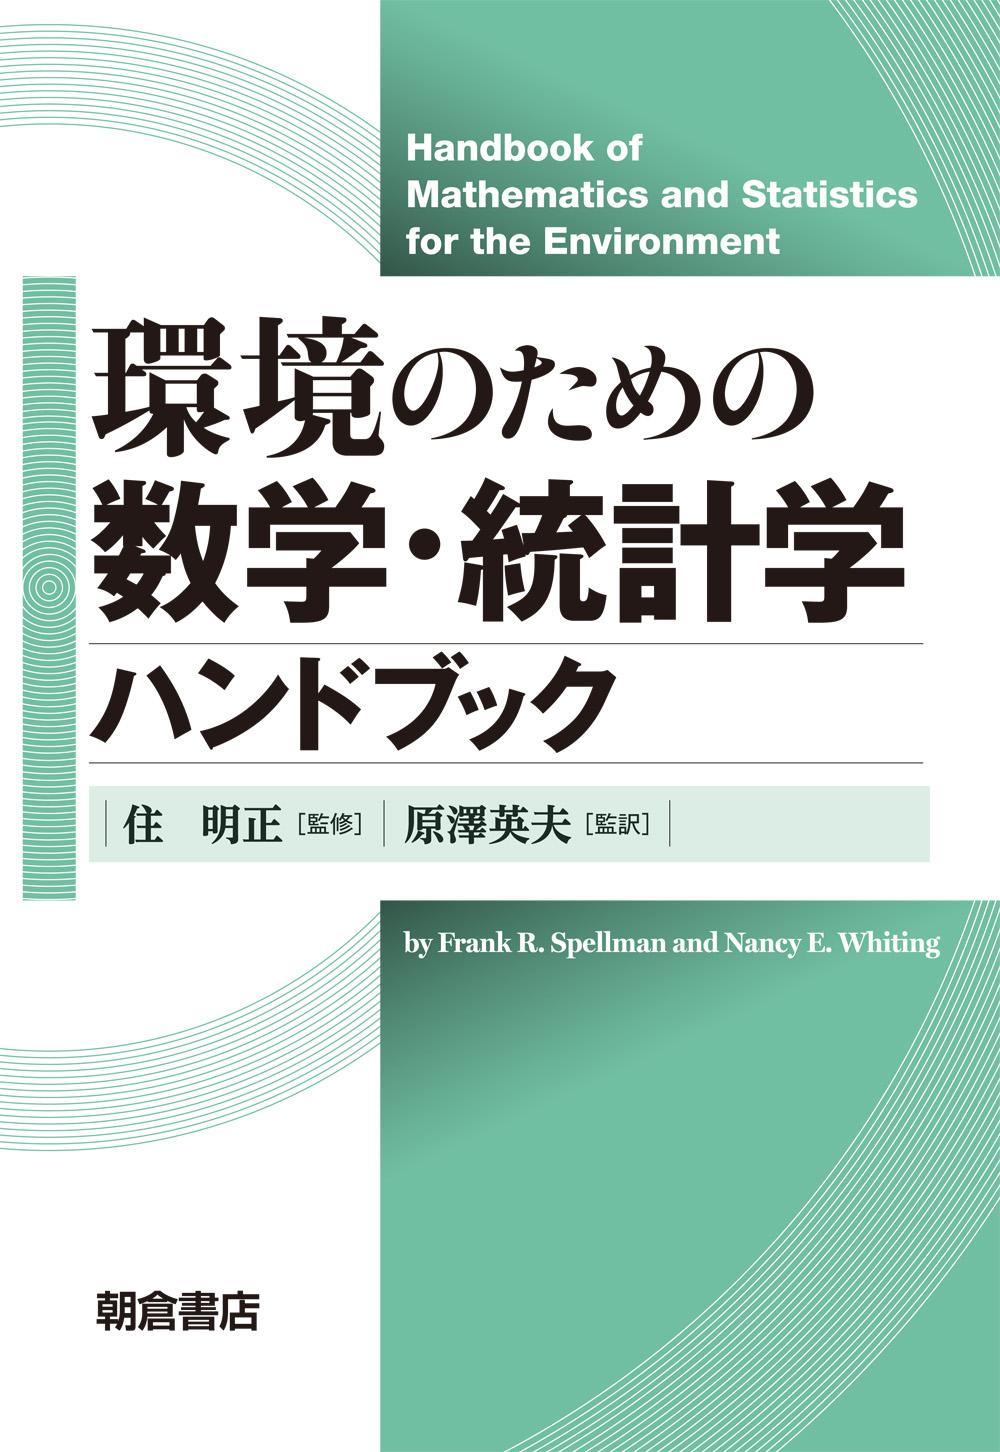 写真：環境のための環境のための数学・統計学ハンドブック